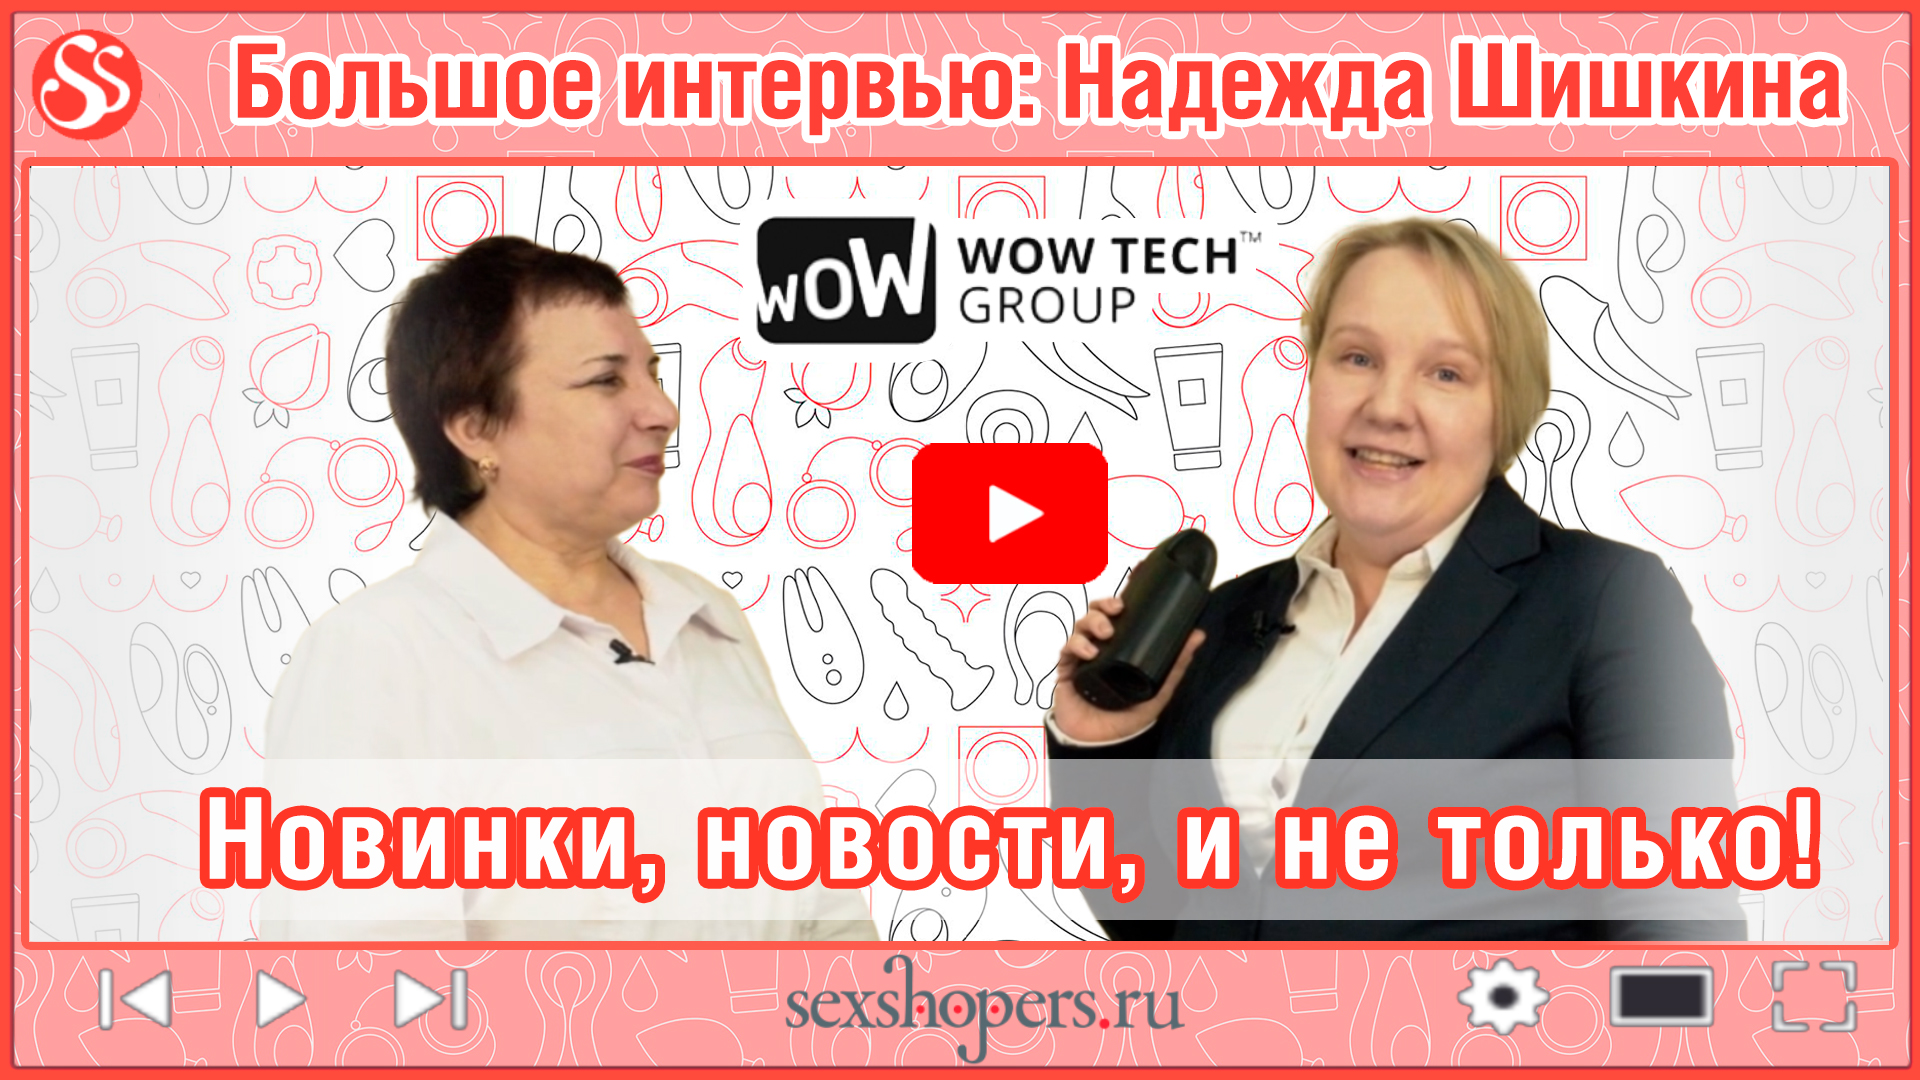 Надежда Шишкина, Wow Tech Group